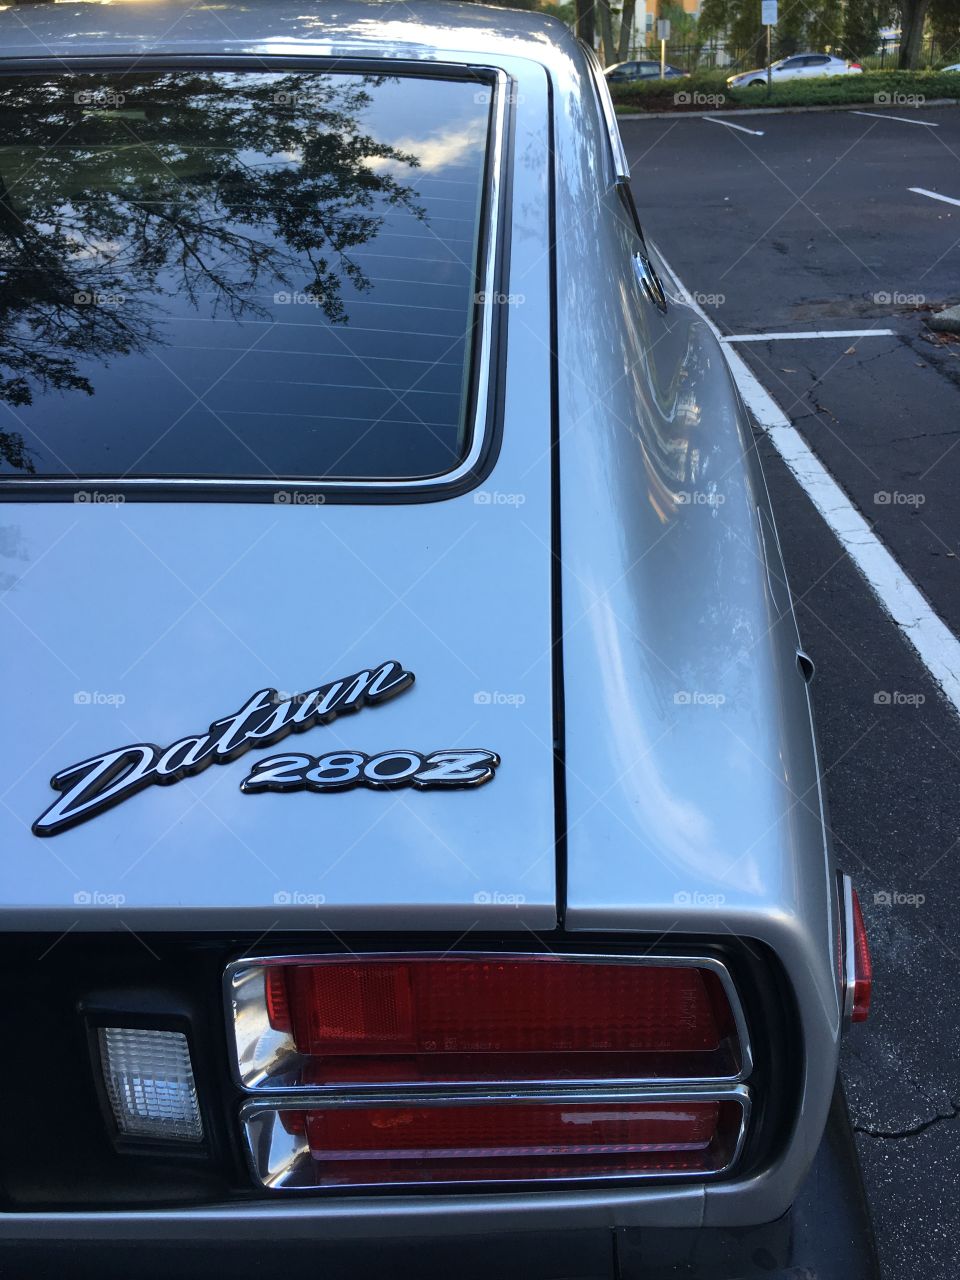 Classic Datsun 280z. 